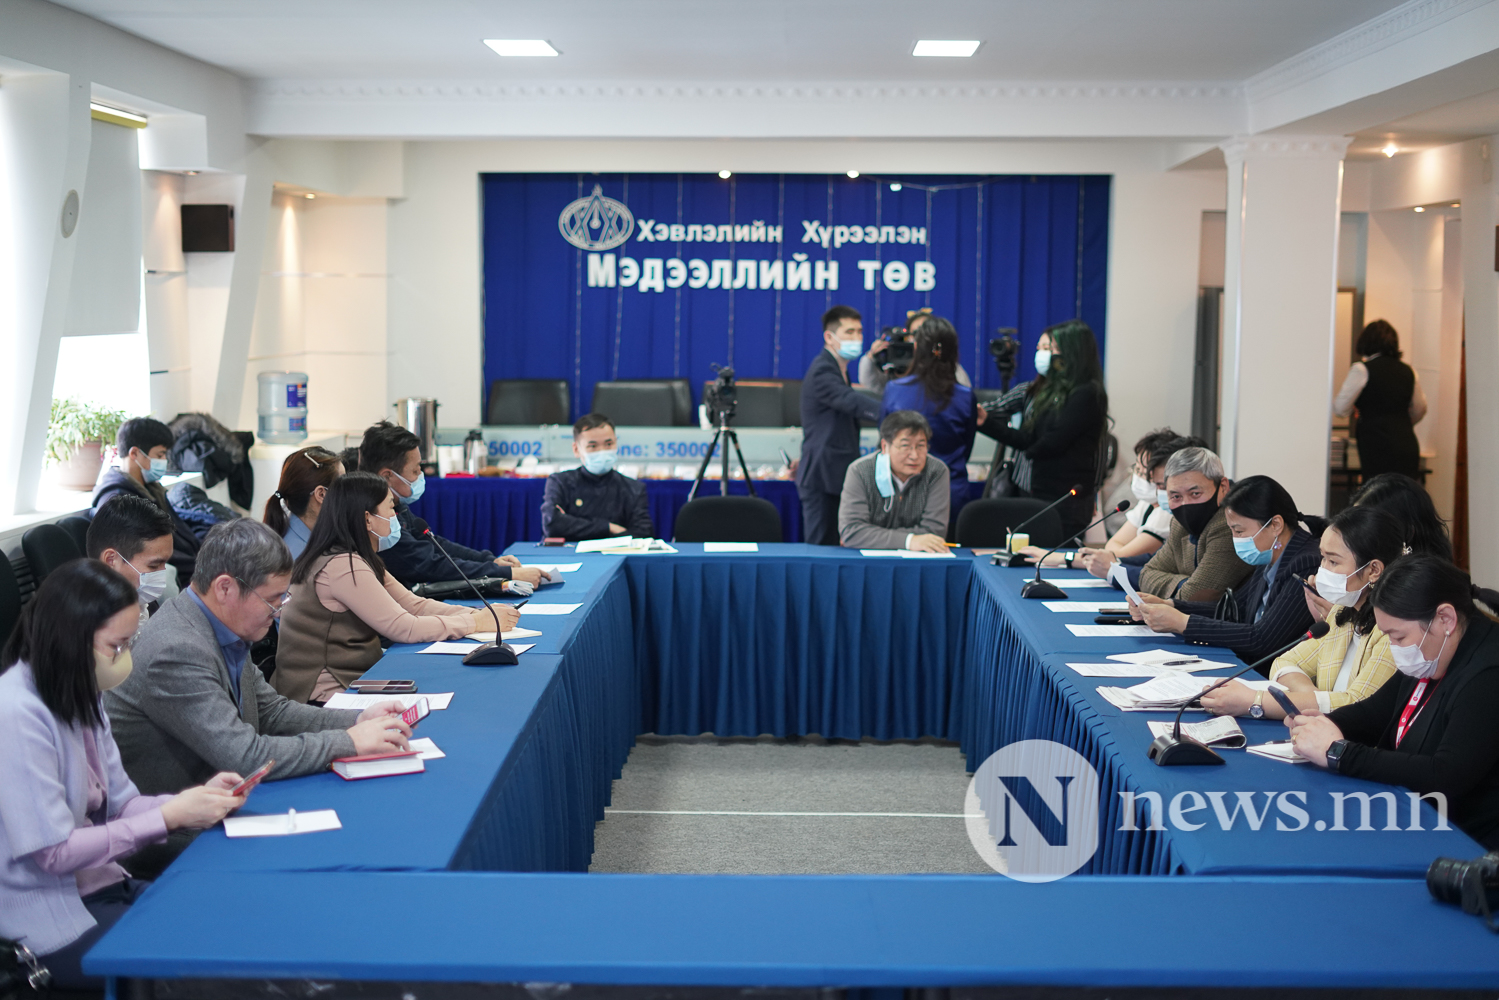 Монгол бичгийн үндэсний хөтөлбөрийг хэрэгжүүлэхэд хэвлэл мэдээллийн байгууллагуудын үүрэг, оролцоо (5 of 14)